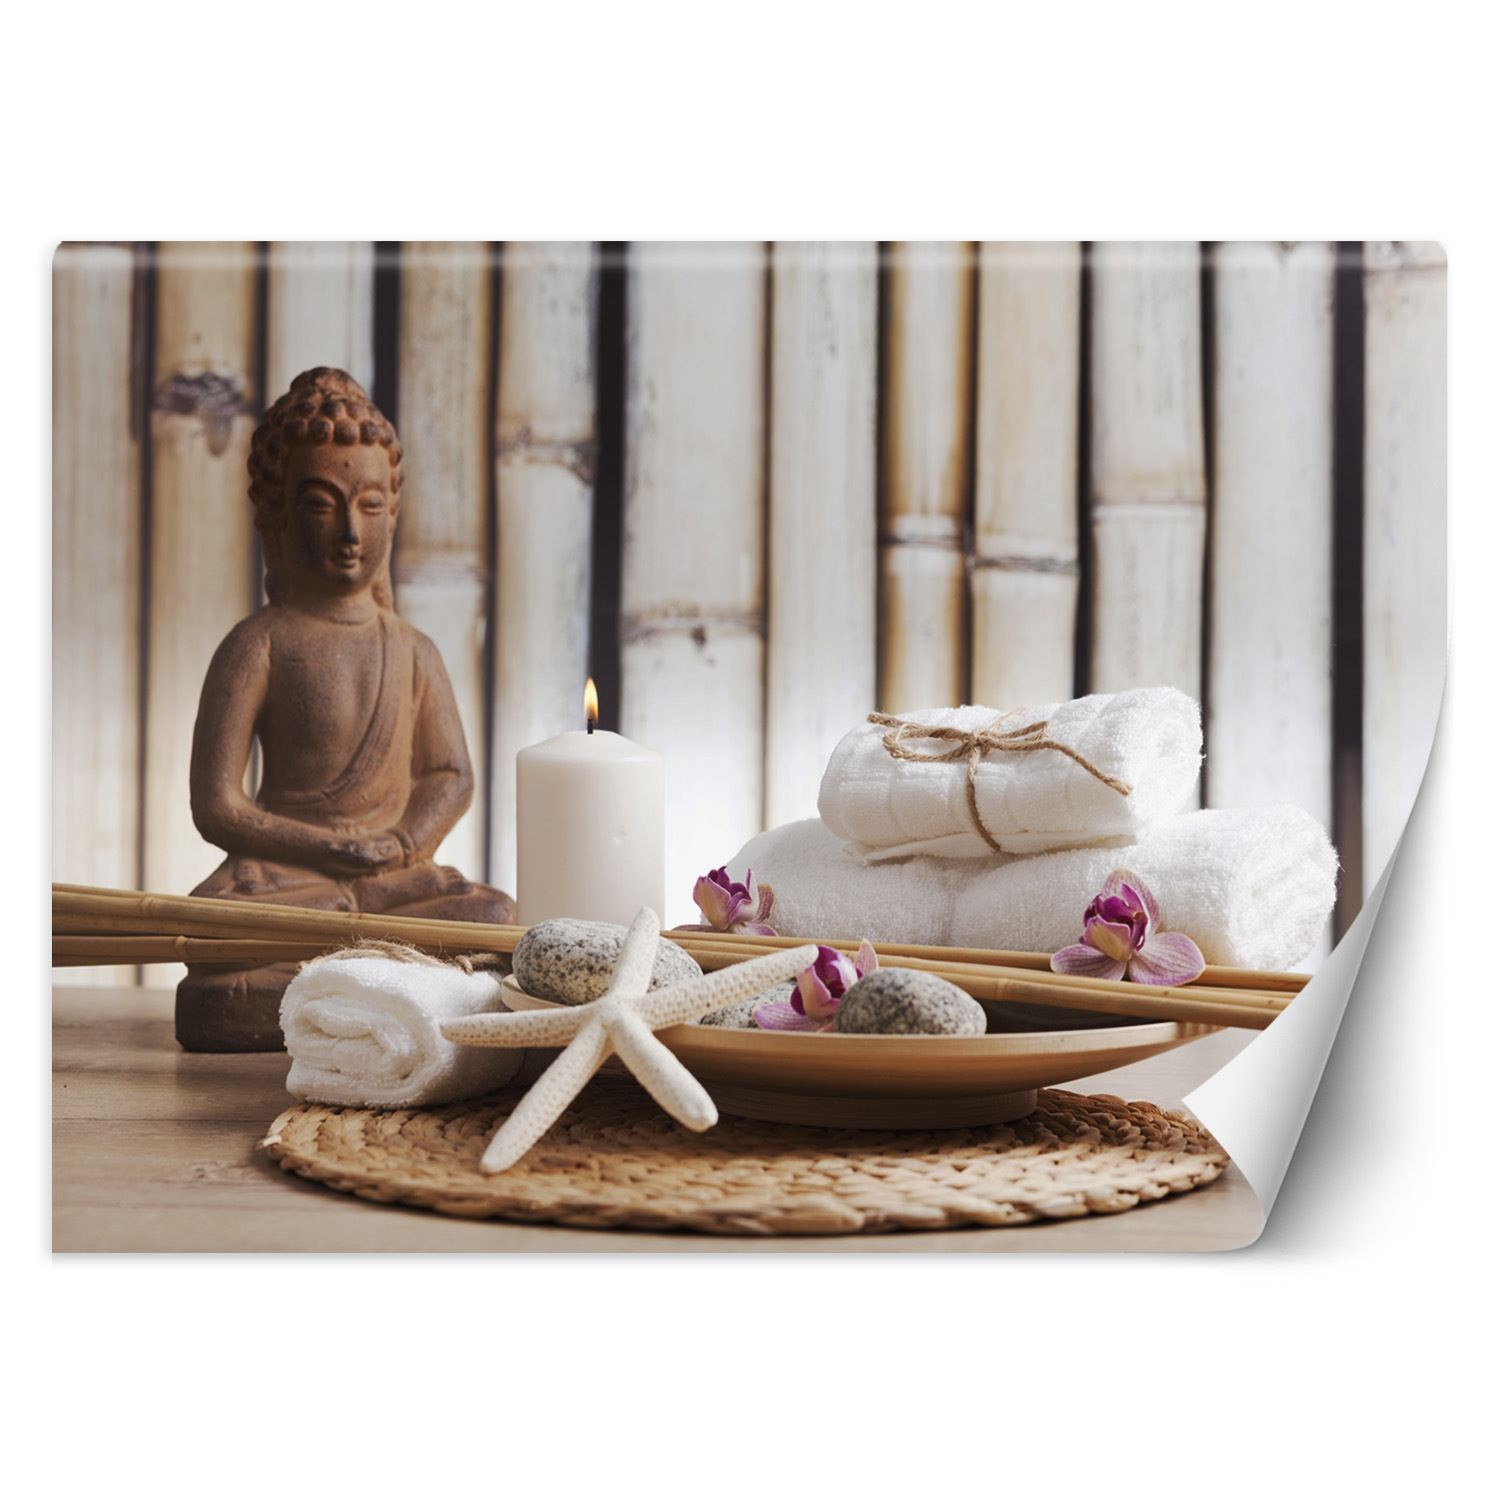 Trend24 – Behang – Standbeeld Van Boeddha In Spa – Behangpapier – Fotobehang – Behang Woonkamer – 250x175x2 cm – Incl. behanglijm